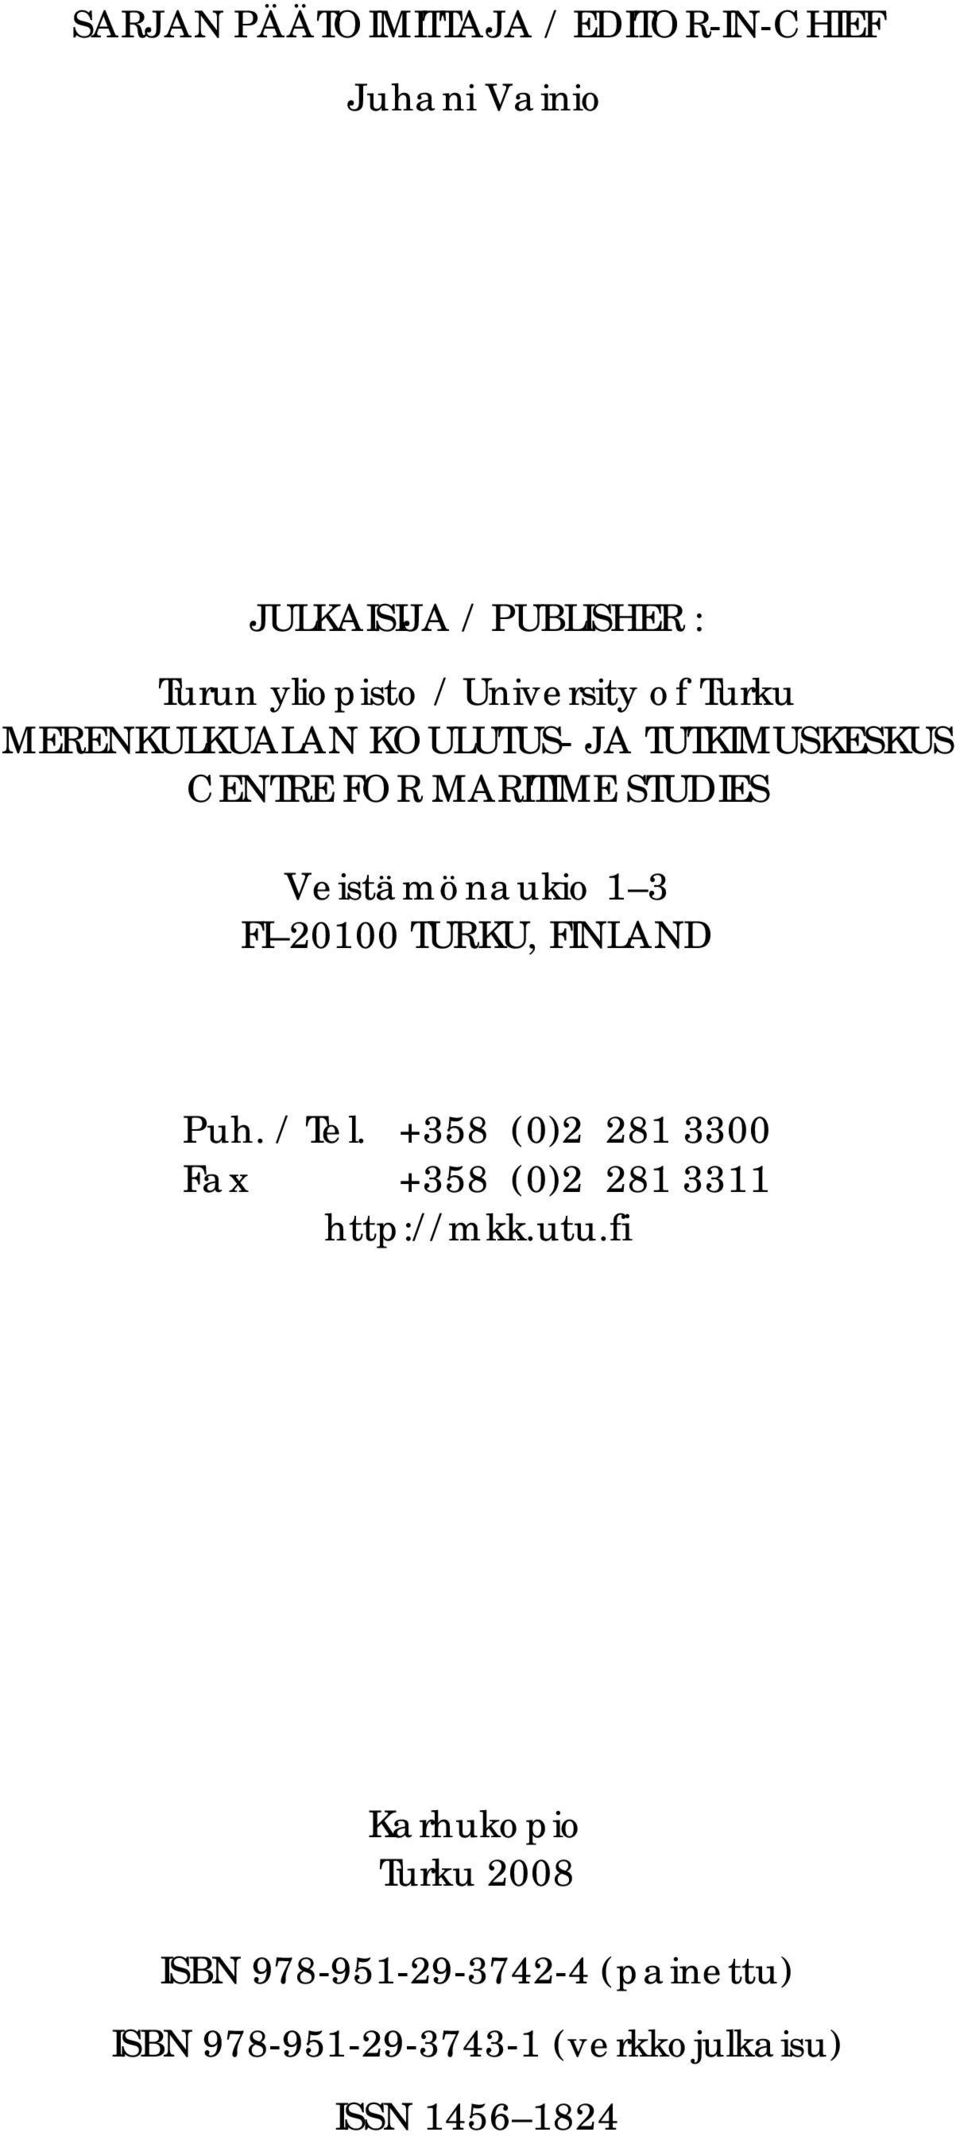 Veistämönaukio 1 3 FI 21 TURKU, FINLAND Puh. / Tel. +358 ()2 281 33 Fax +358 ()2 281 3311 http://mkk.